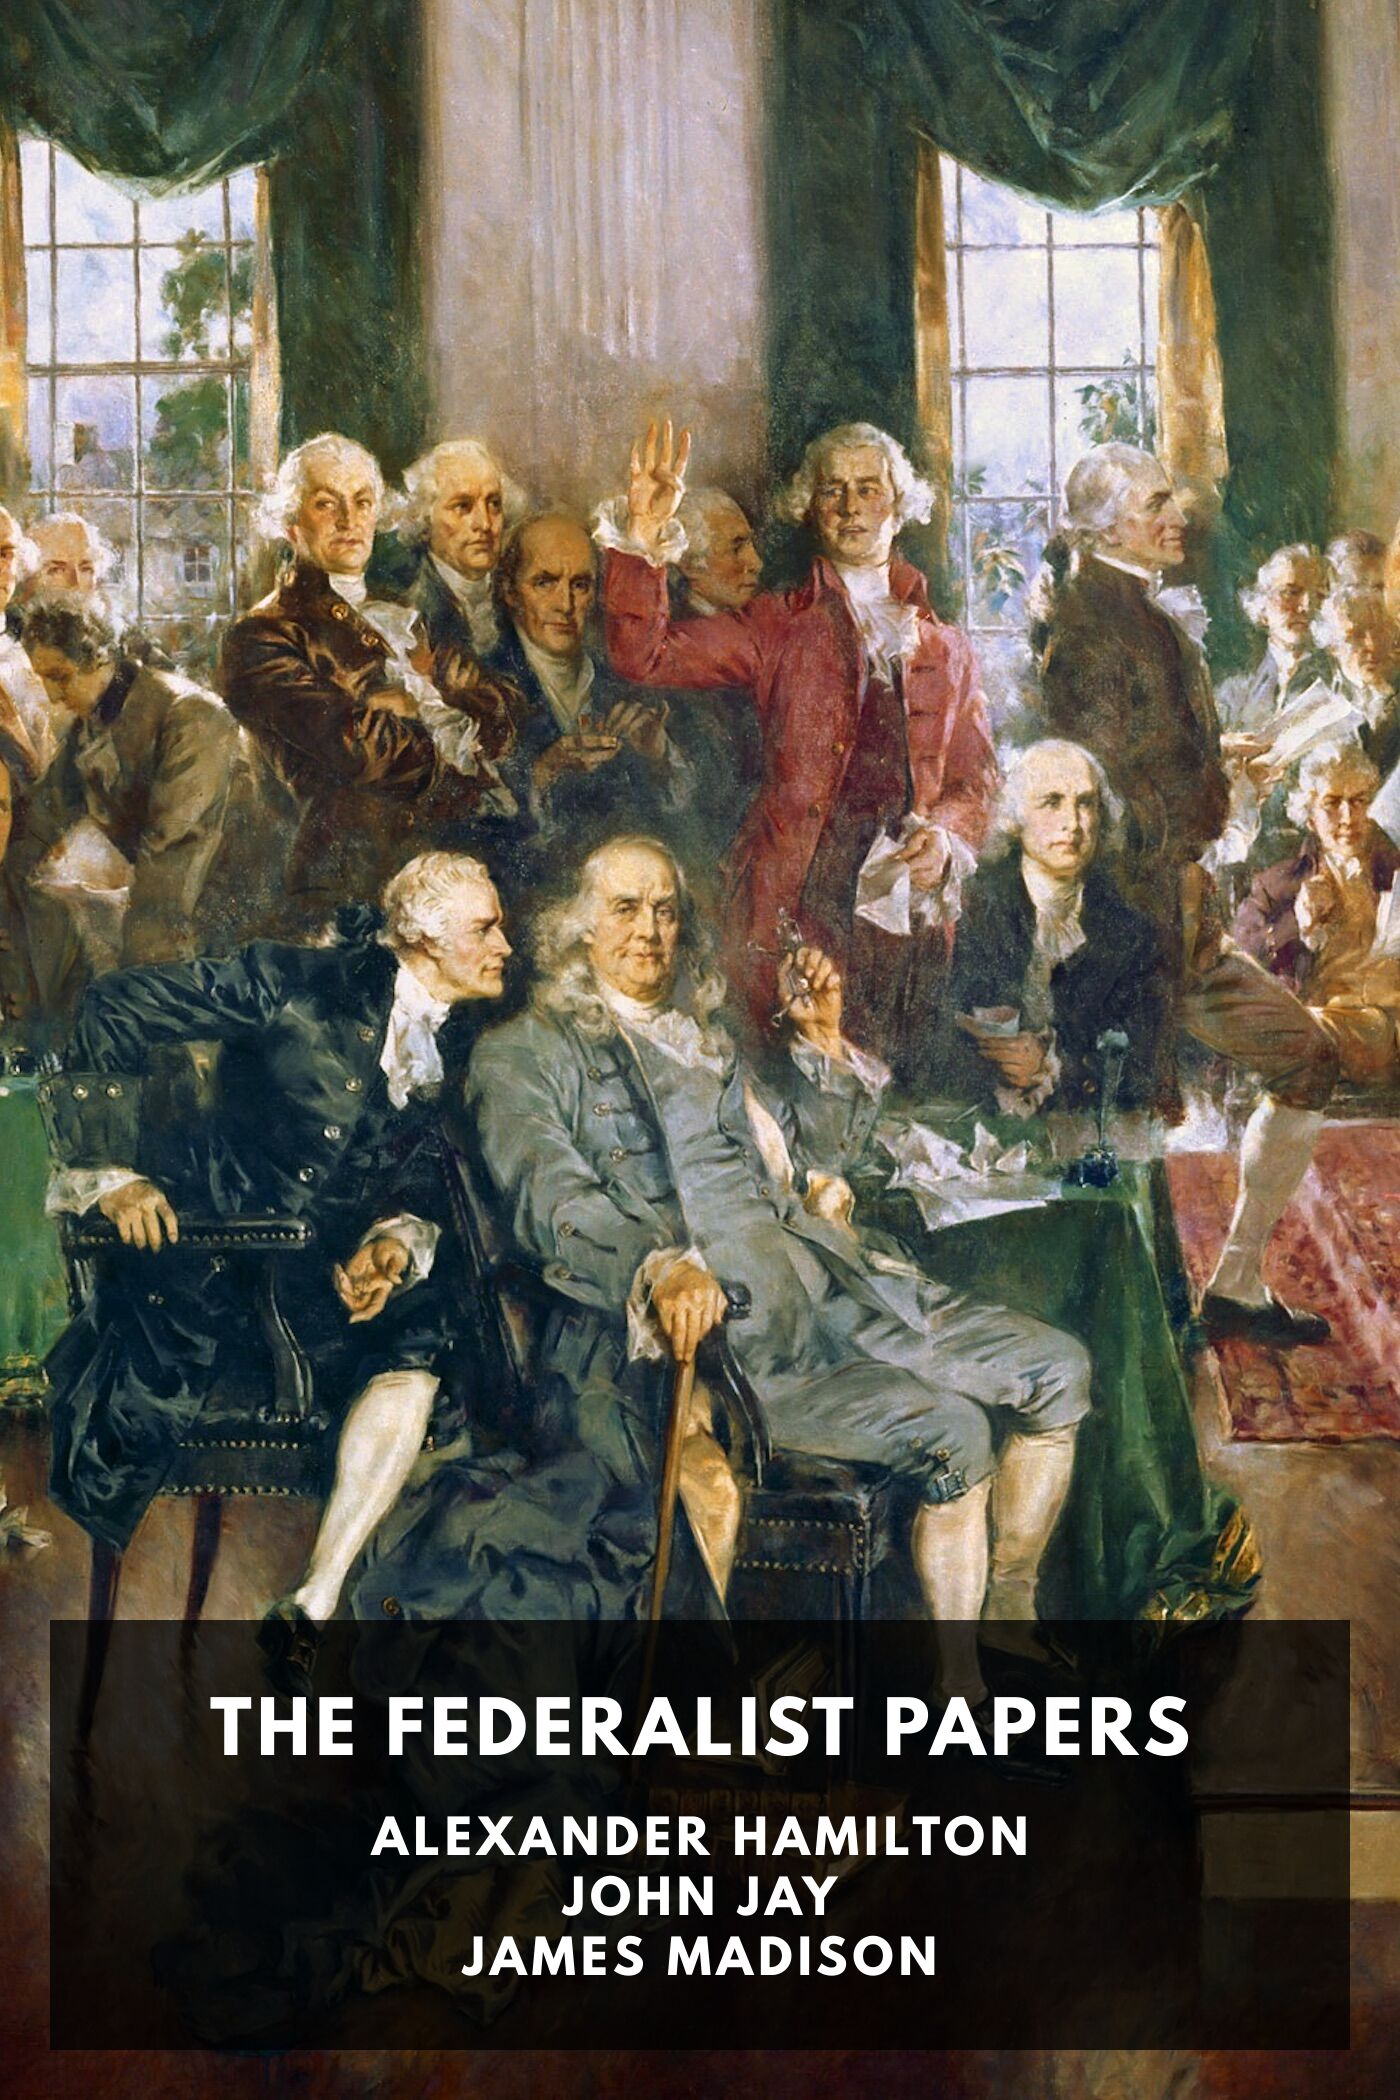 james madison federalist essays